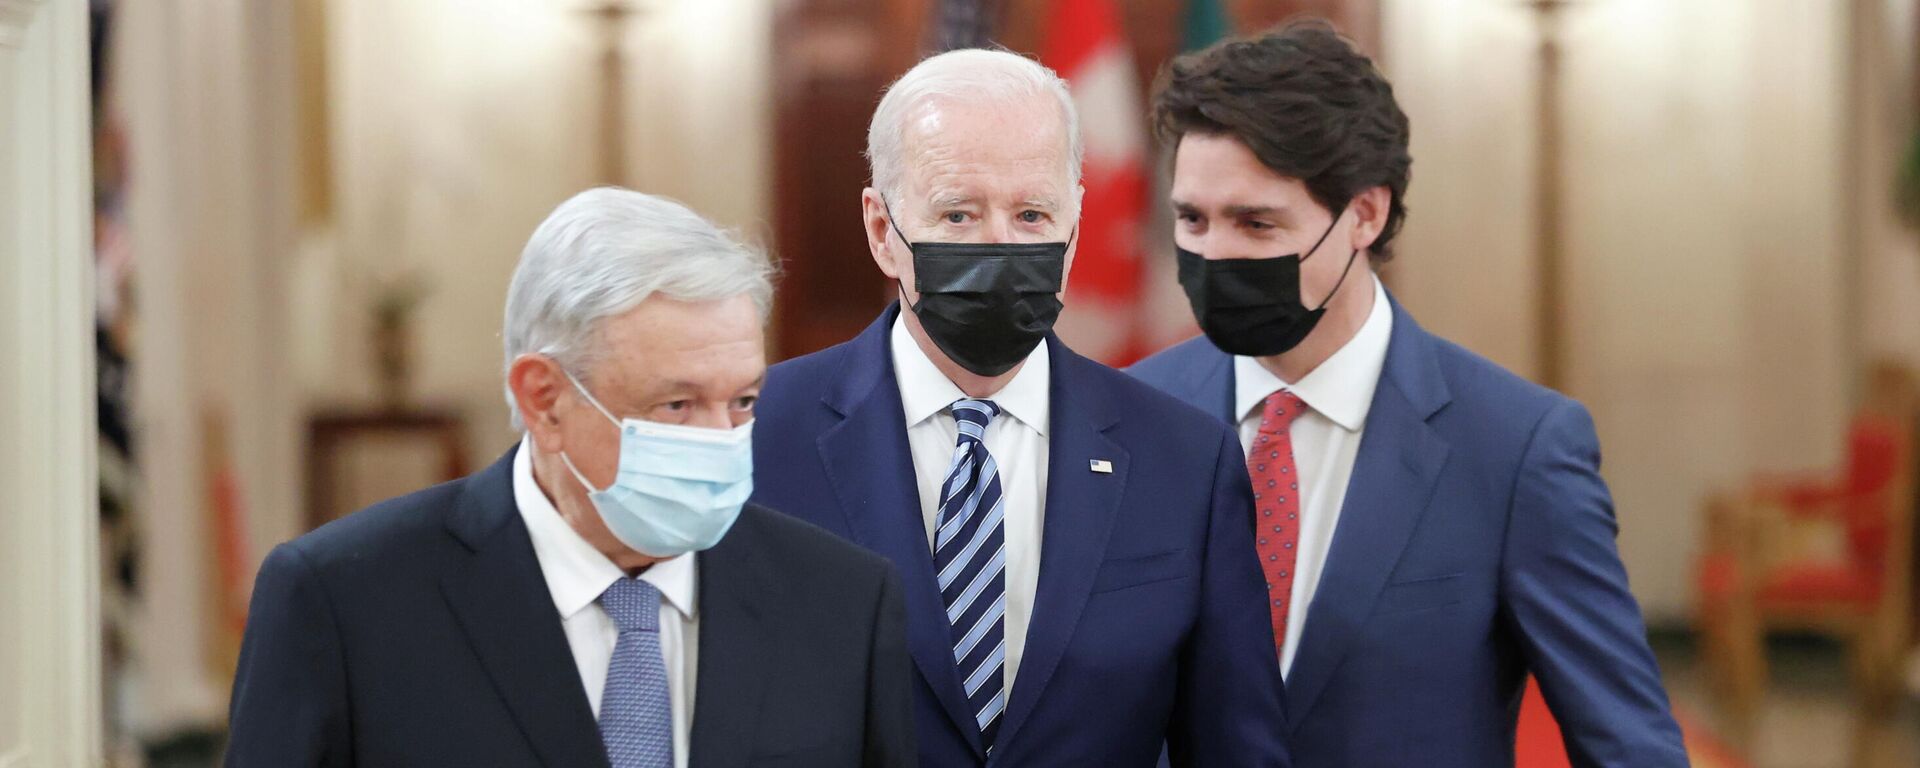 El presidente de México, Andrés Manuel López Obrador, el presidente de EEUU, Joe Biden, y el primir ministro de Canadá, Justin Trudeau - Sputnik Mundo, 1920, 18.11.2021